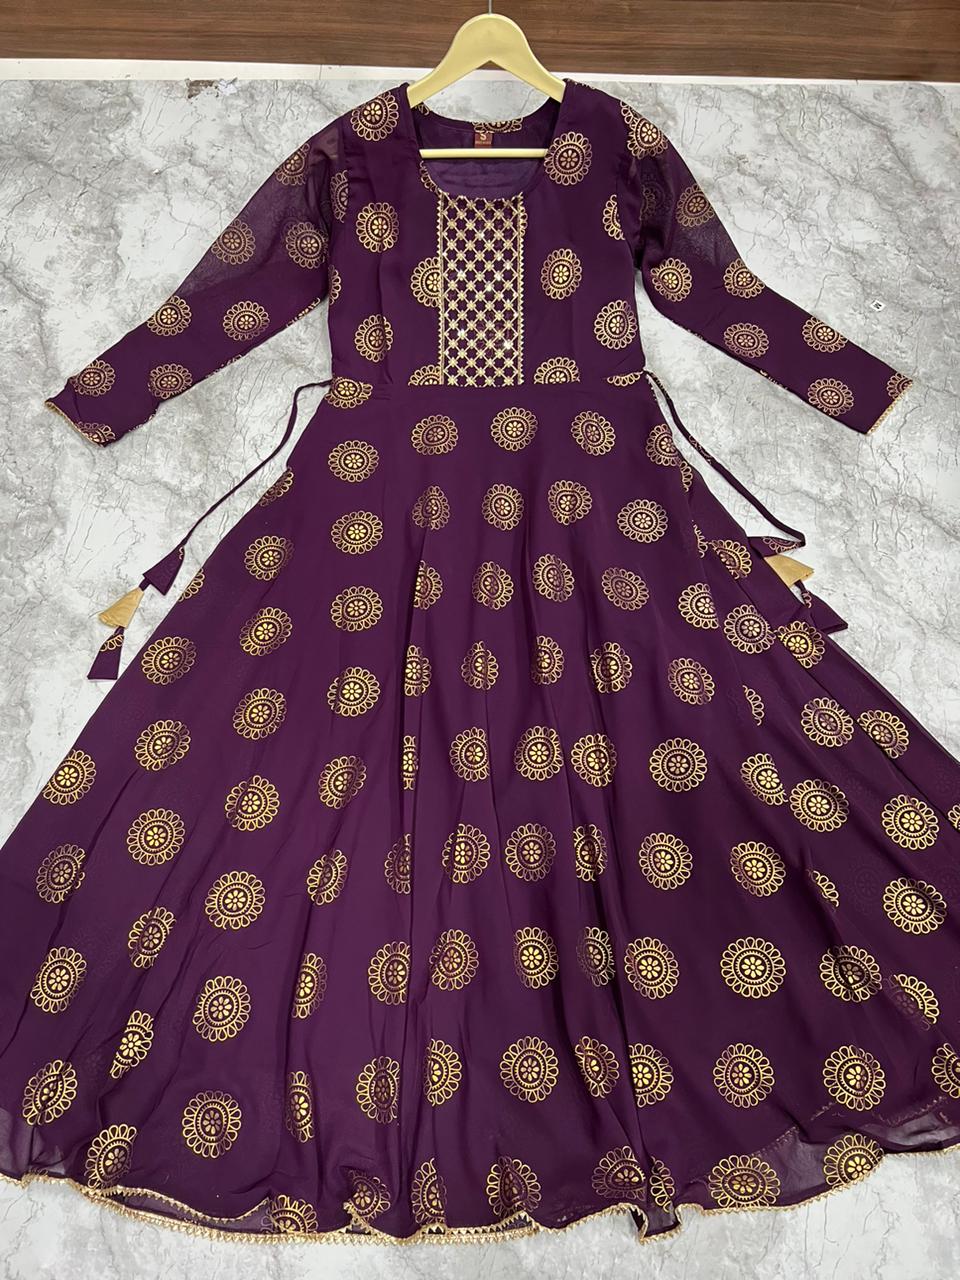 Enchanted Tea Party Gown | Designer dresses, Pretty dresses, Fairy dress